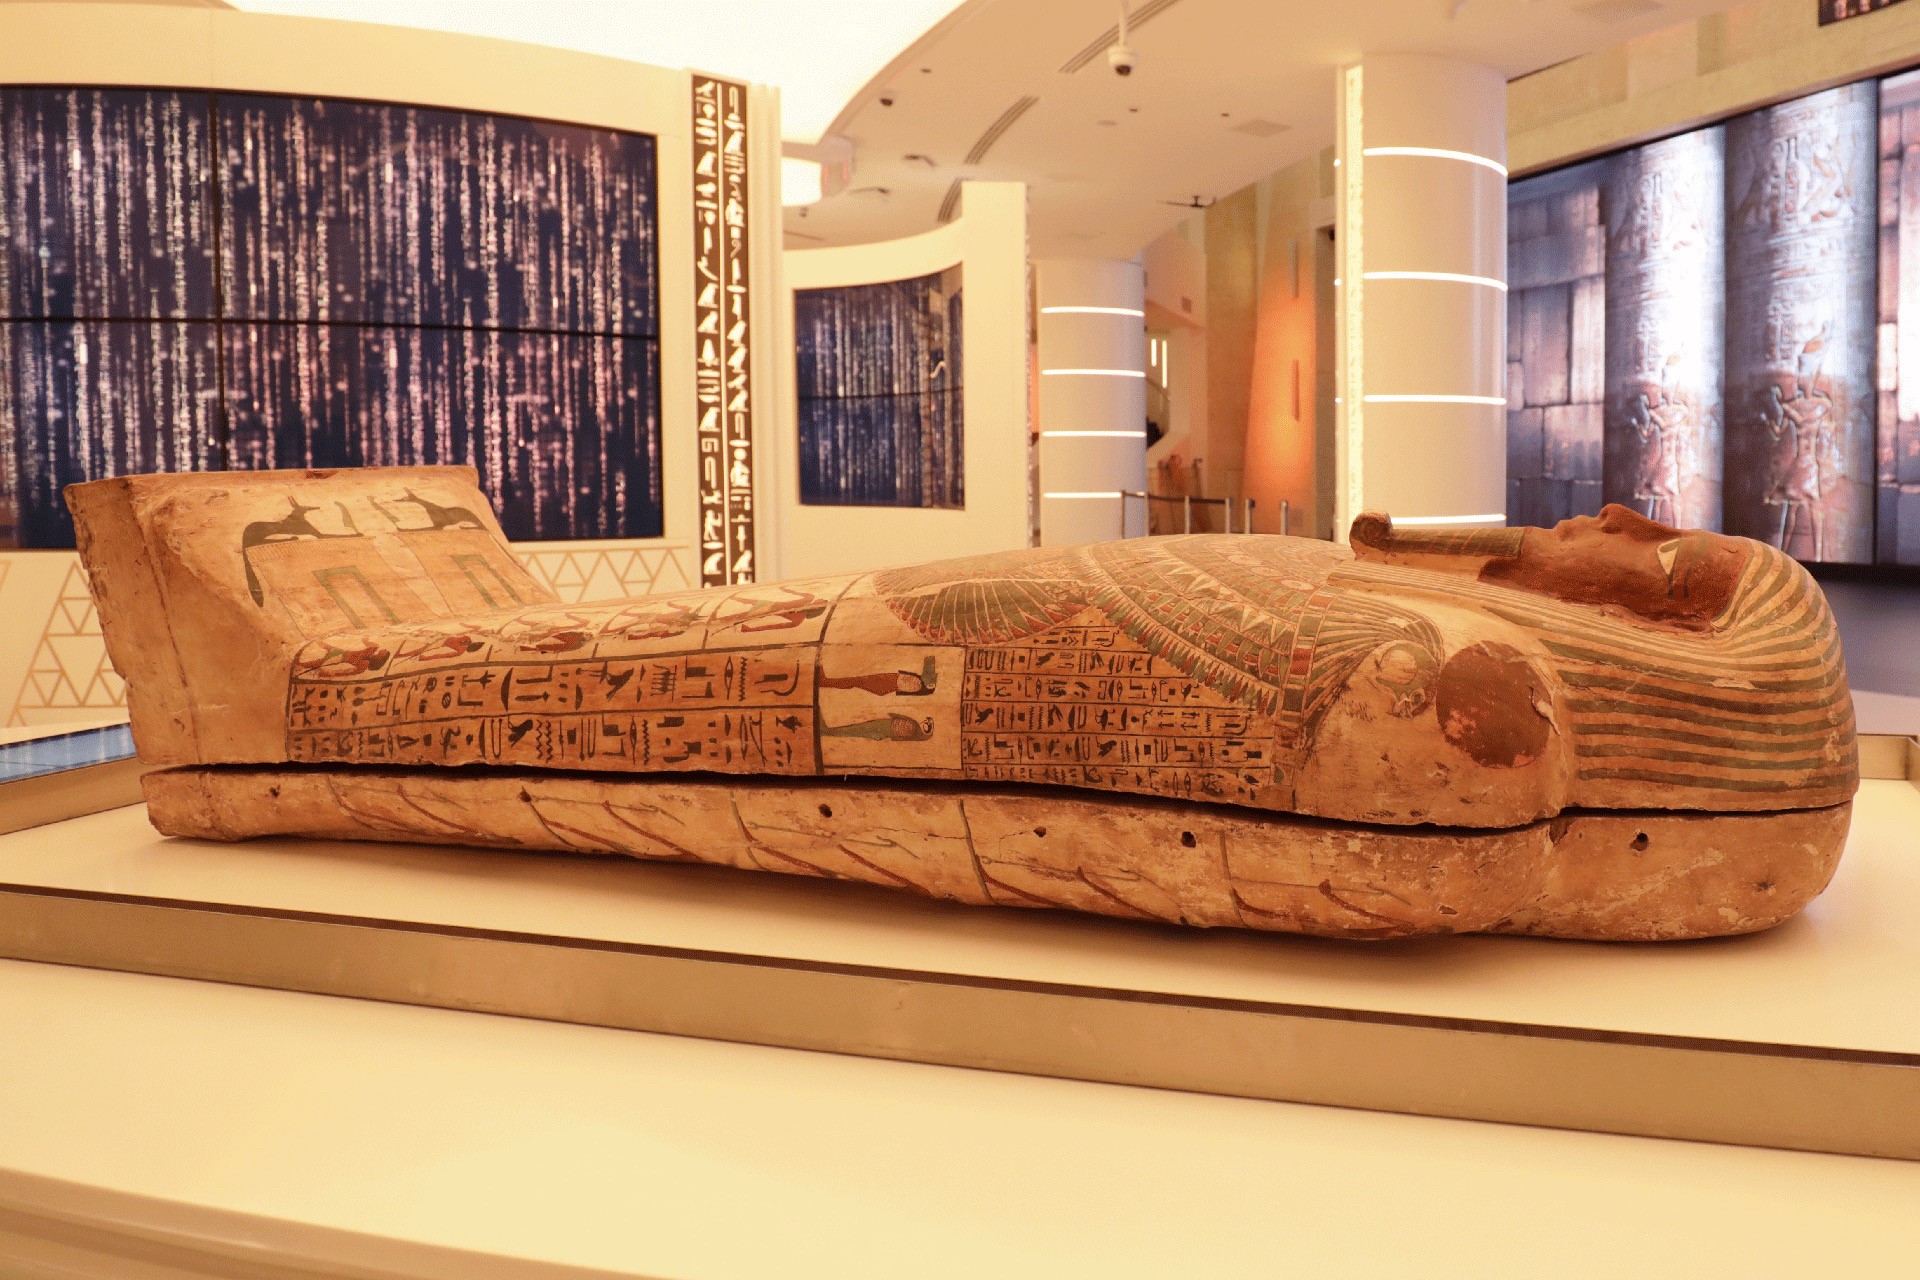 مصر تستعد لعرض تابوت فرعوني أثري ضمن جناحها في اكسبو دبي